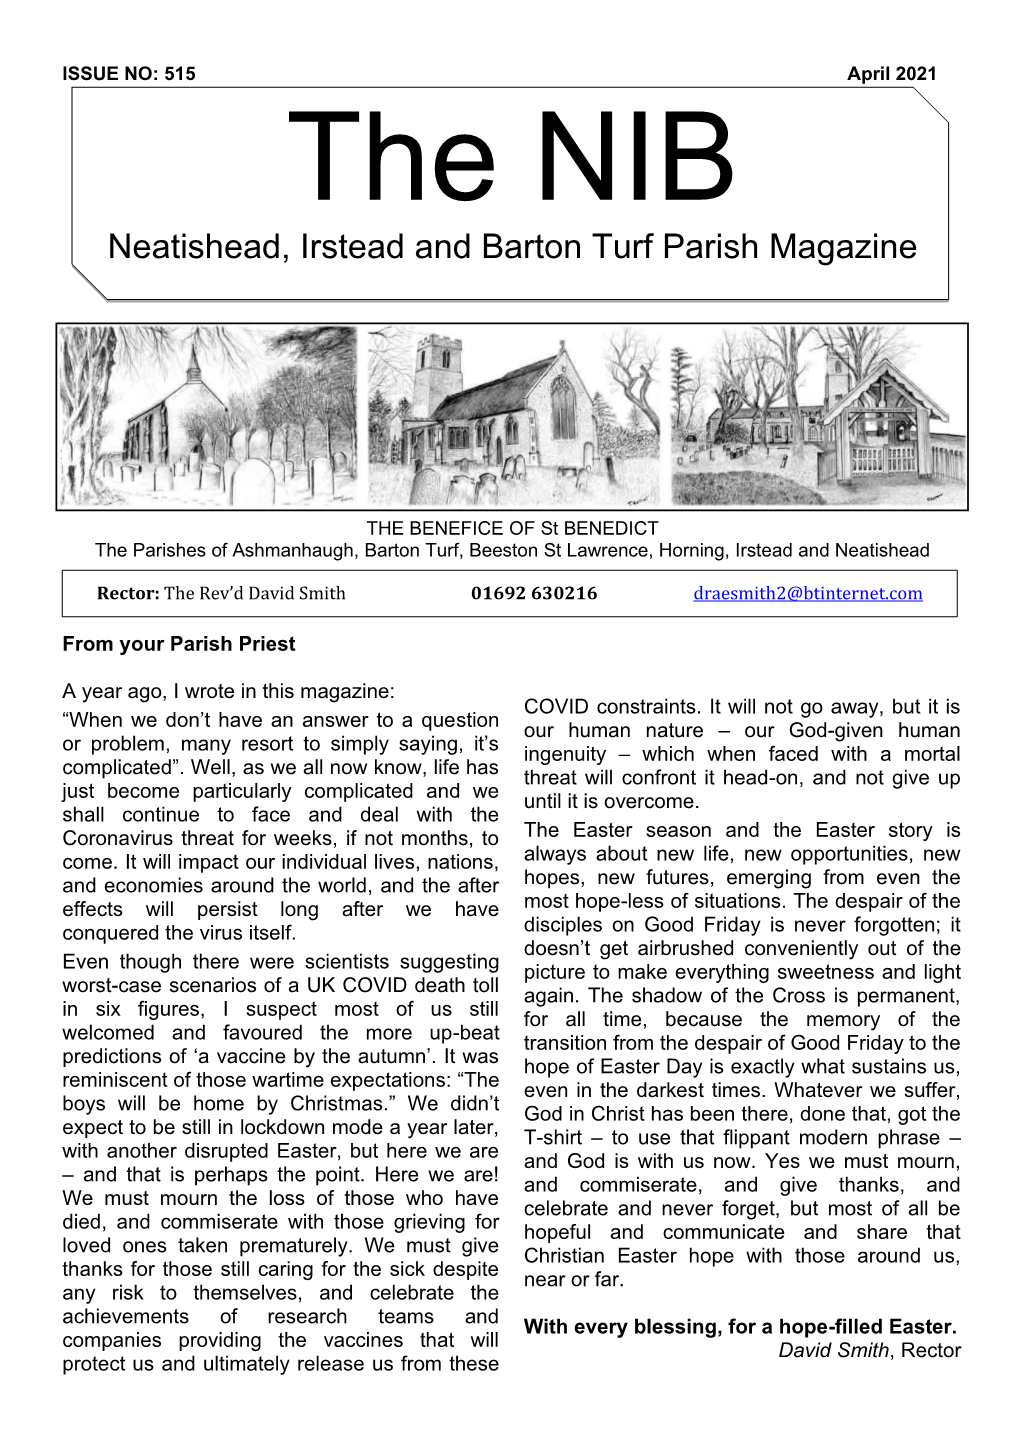 Neatishead, Irstead and Barton Turf Parish Magazine